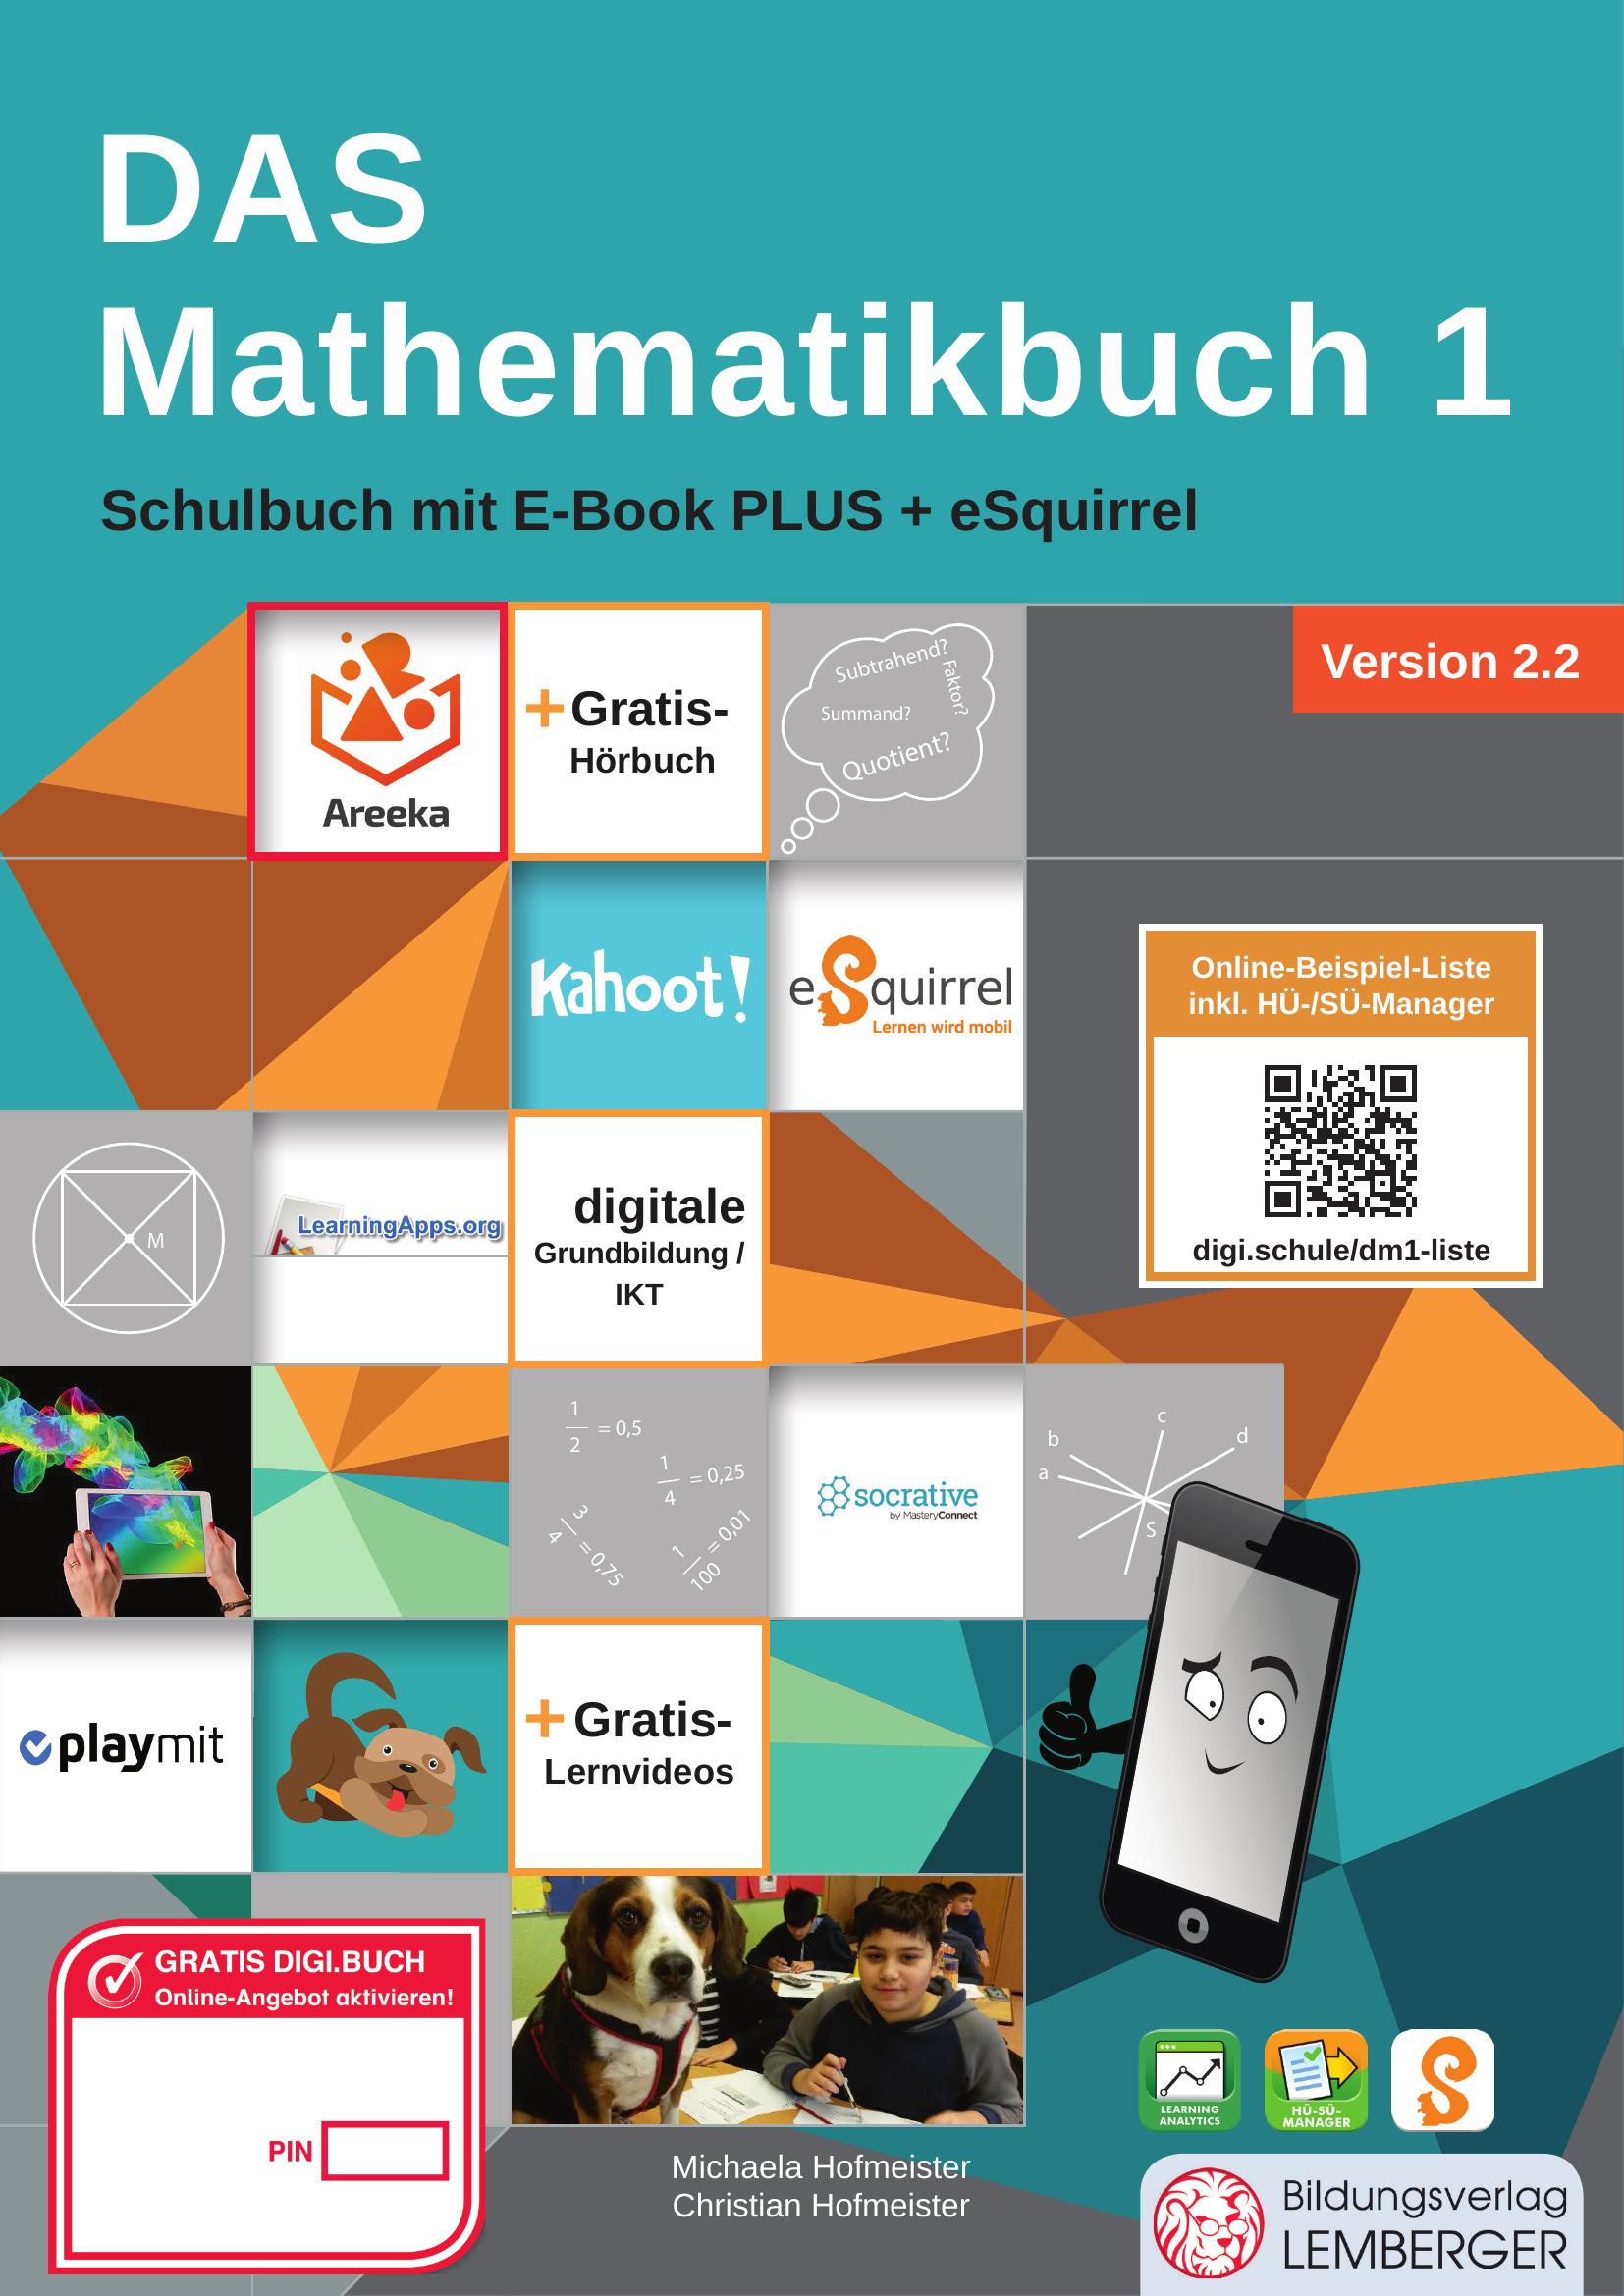 DAS Mathematikbuch 1 - Schulbuch IKT_Version 2.2